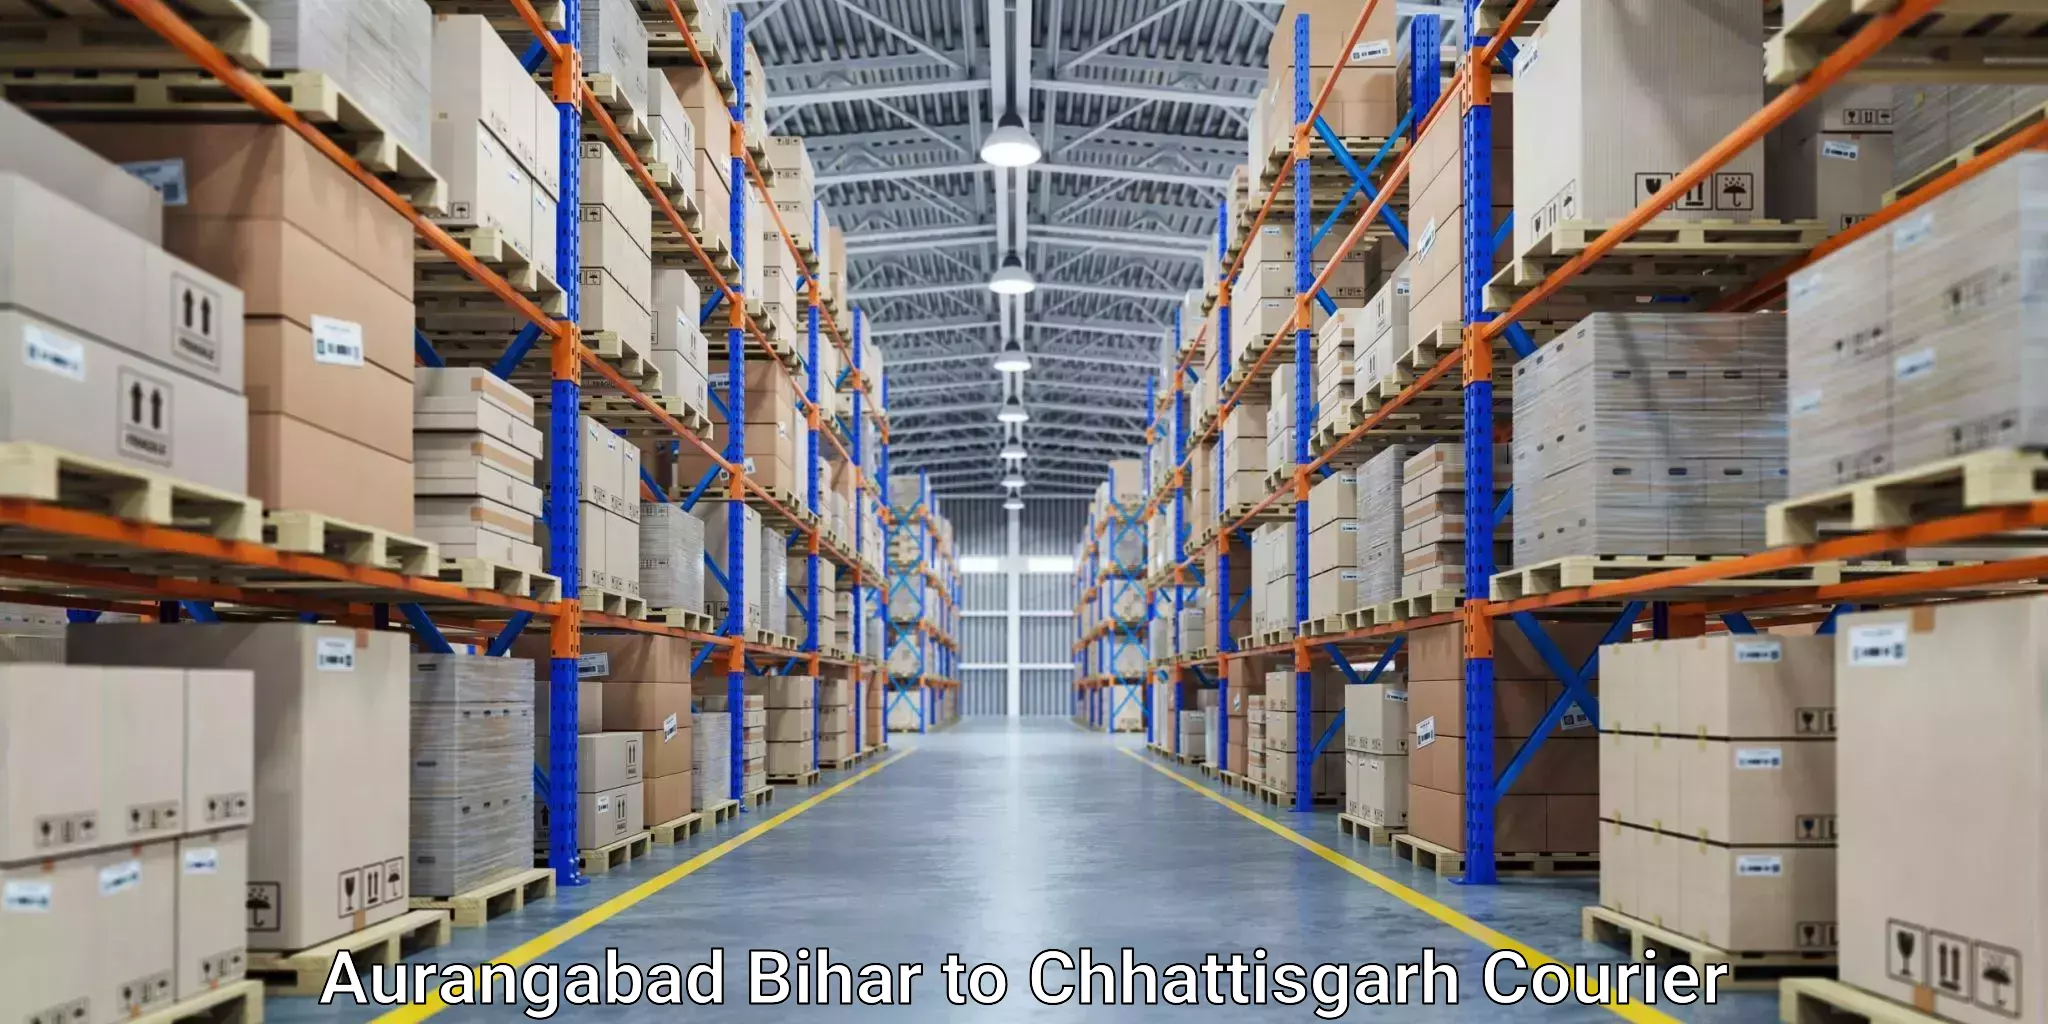 Seamless shipping service Aurangabad Bihar to Janjgir Champa